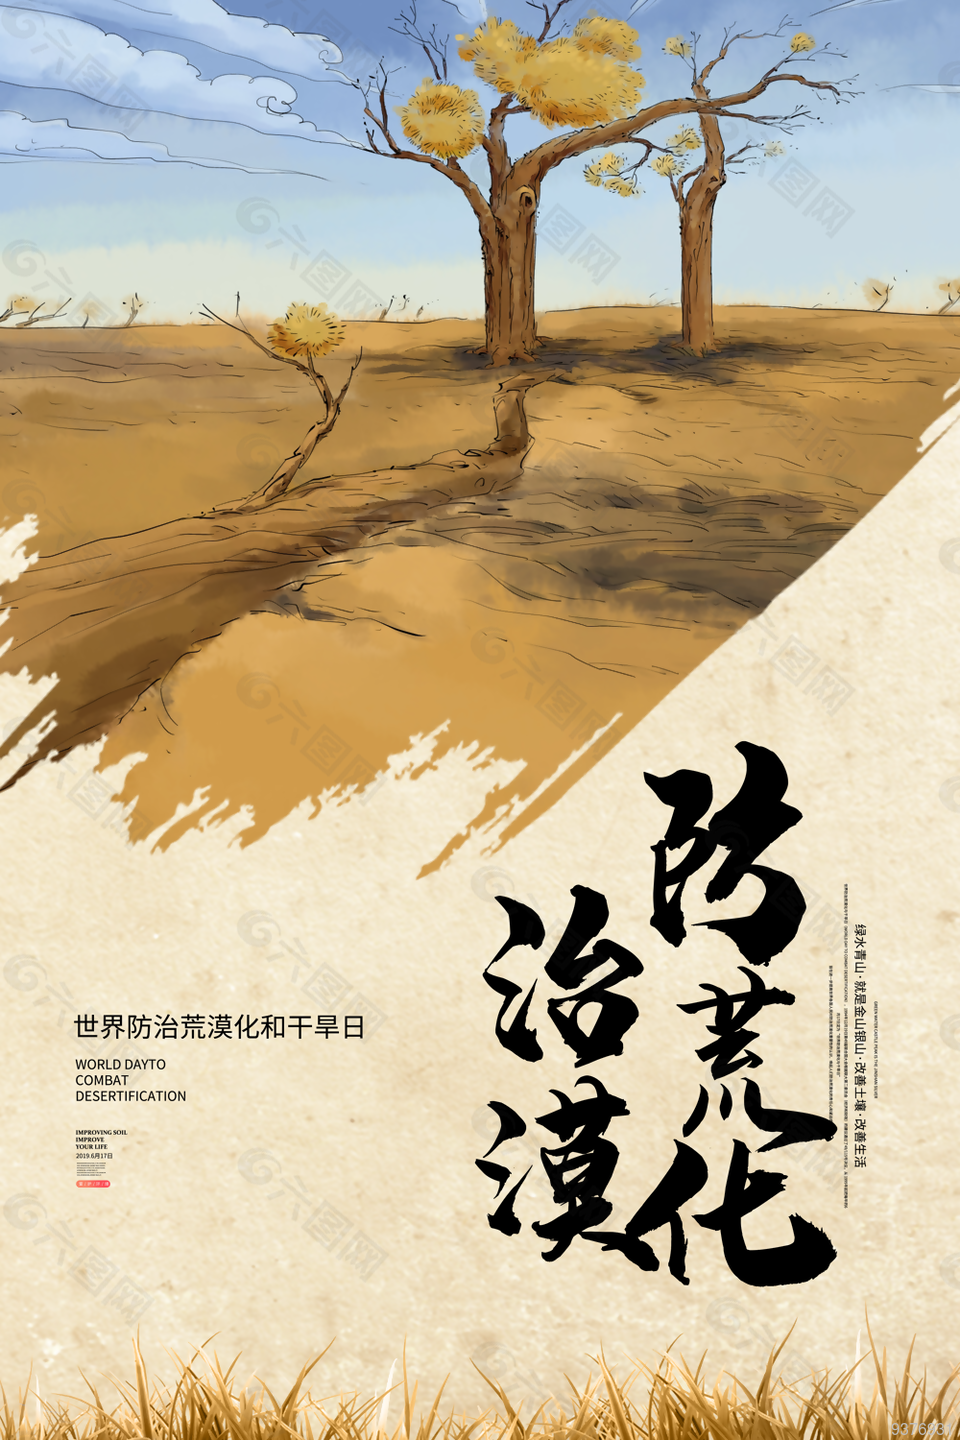 世界防治荒漠化和干旱日海报设计